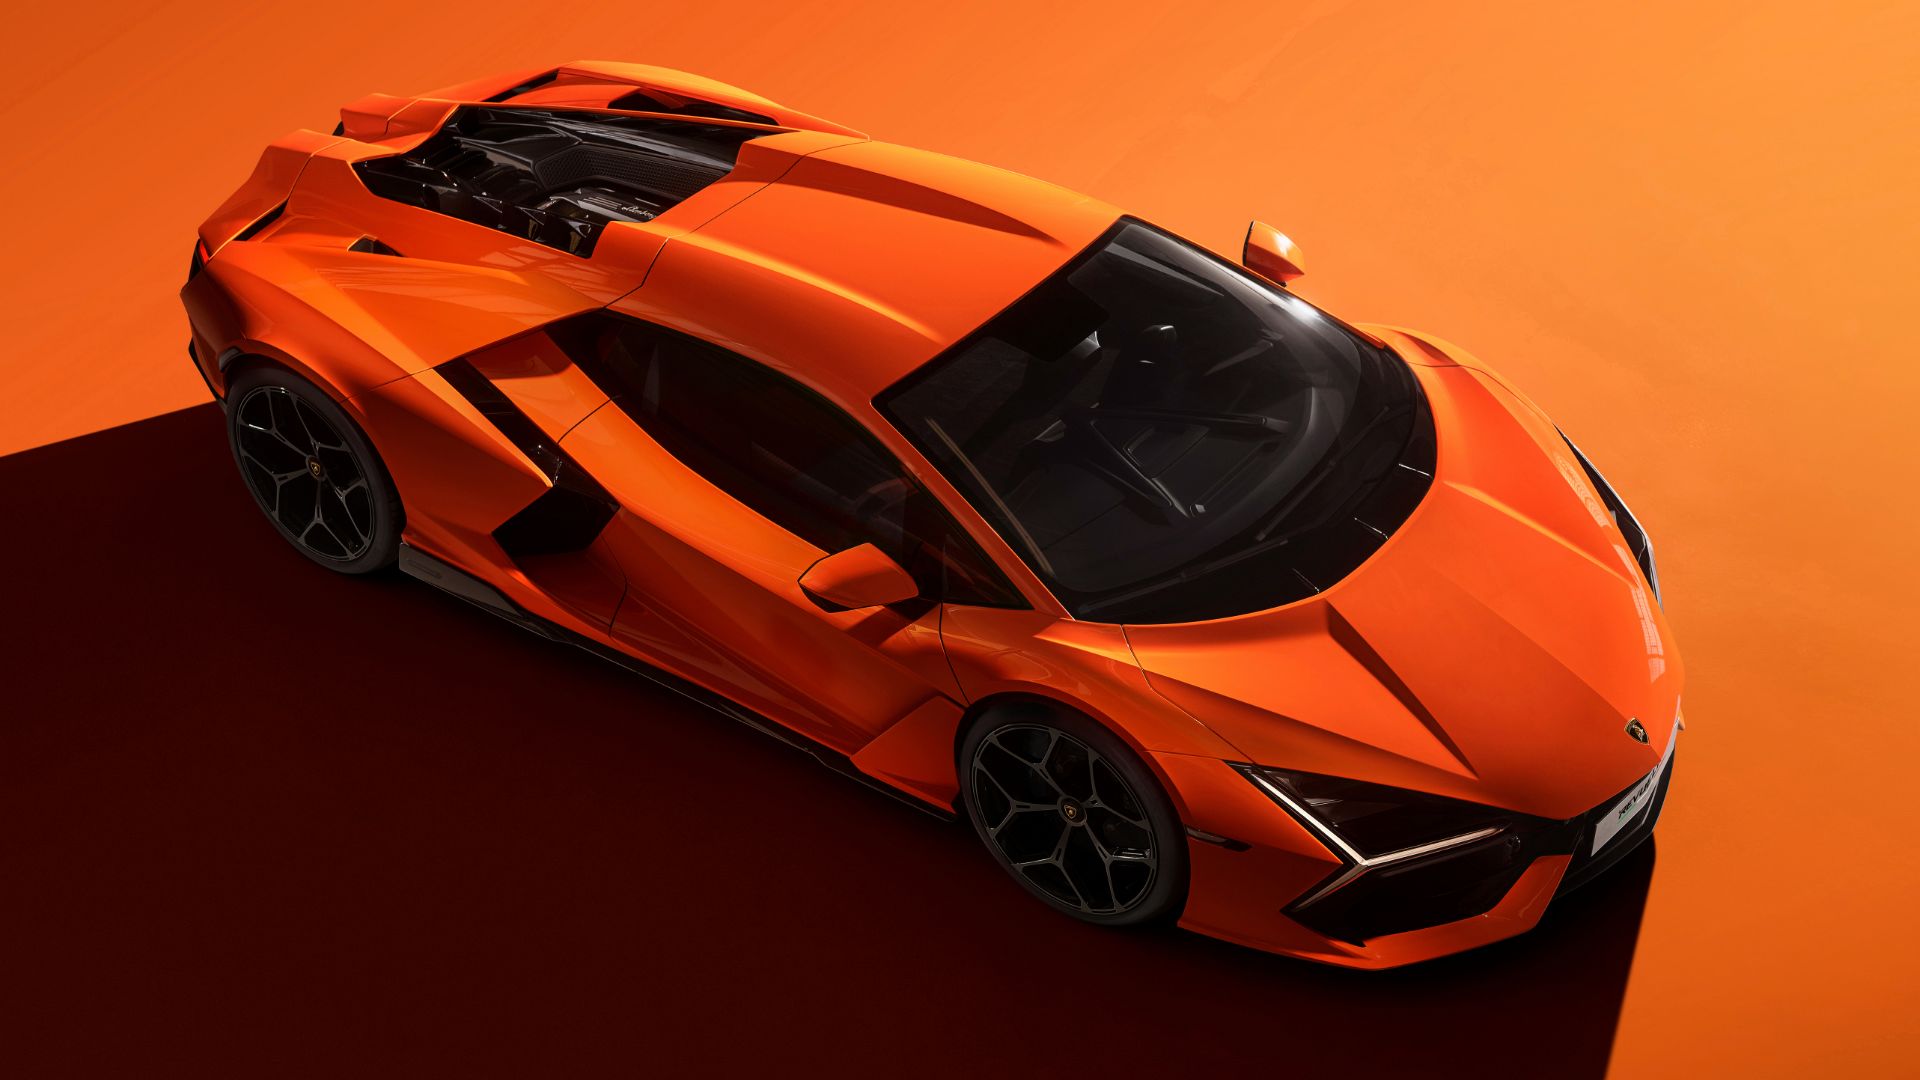 Lamborghini presents Revuelto, the first super sports V12 hybrid plug-in